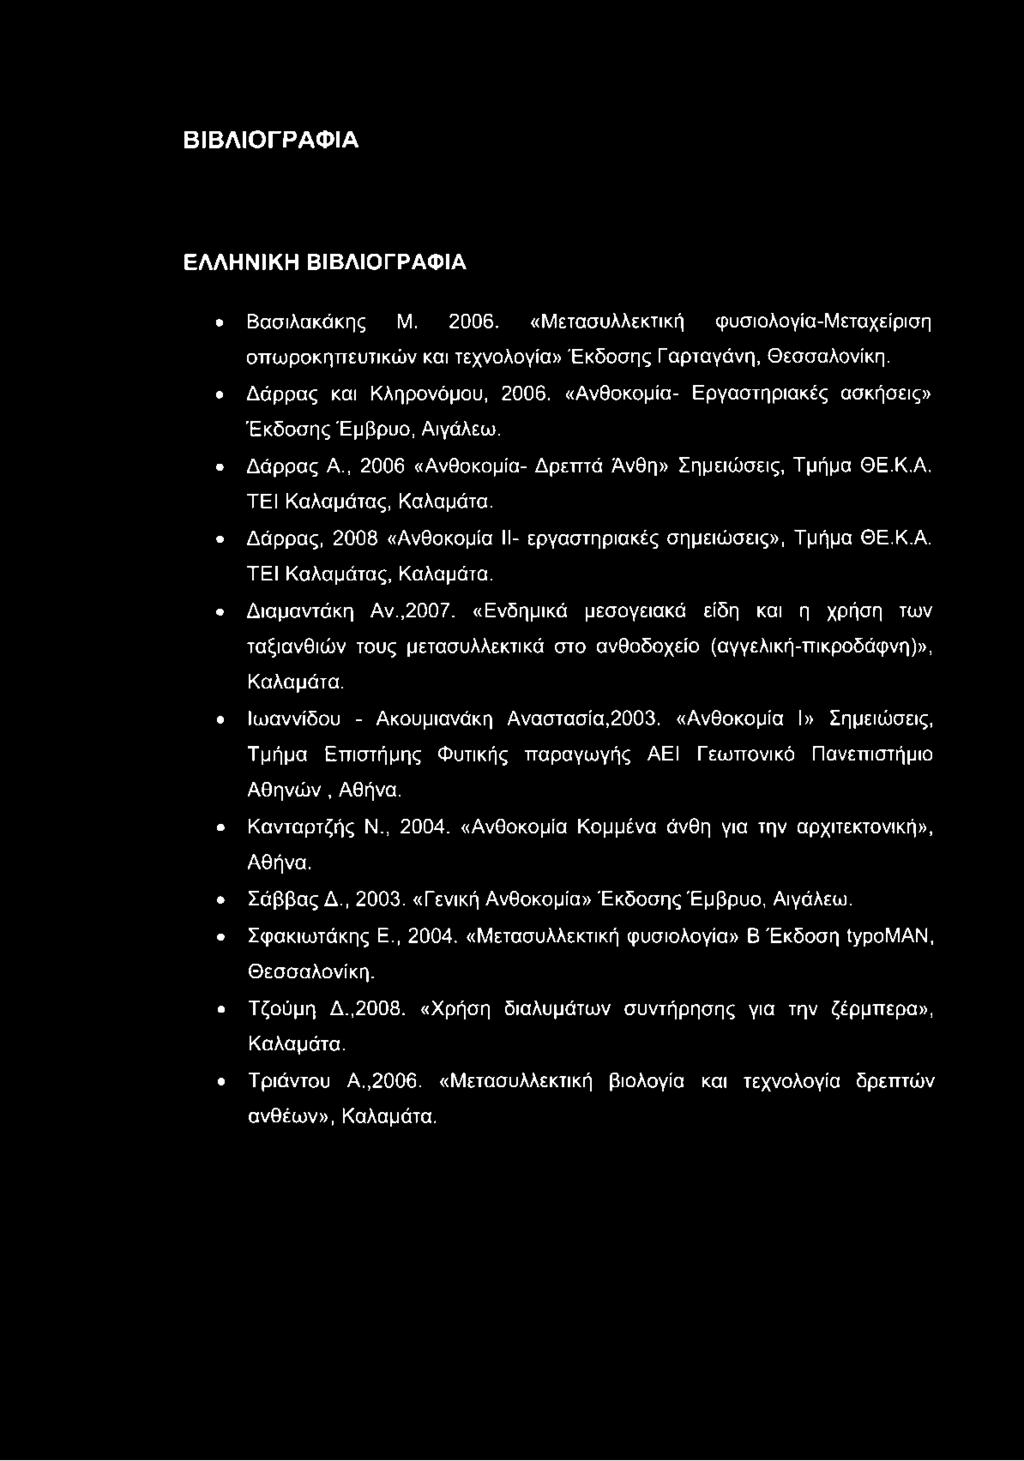 Δάρρας, 2008 «Ανθοκομία II- εργαστηριακές σημειώσεις», Τμήμα ΘΕ.Κ.Α. ΤΕΙ Καλαμάτας, Καλαμάτα. Διαμαντάκη Αν.,2007.